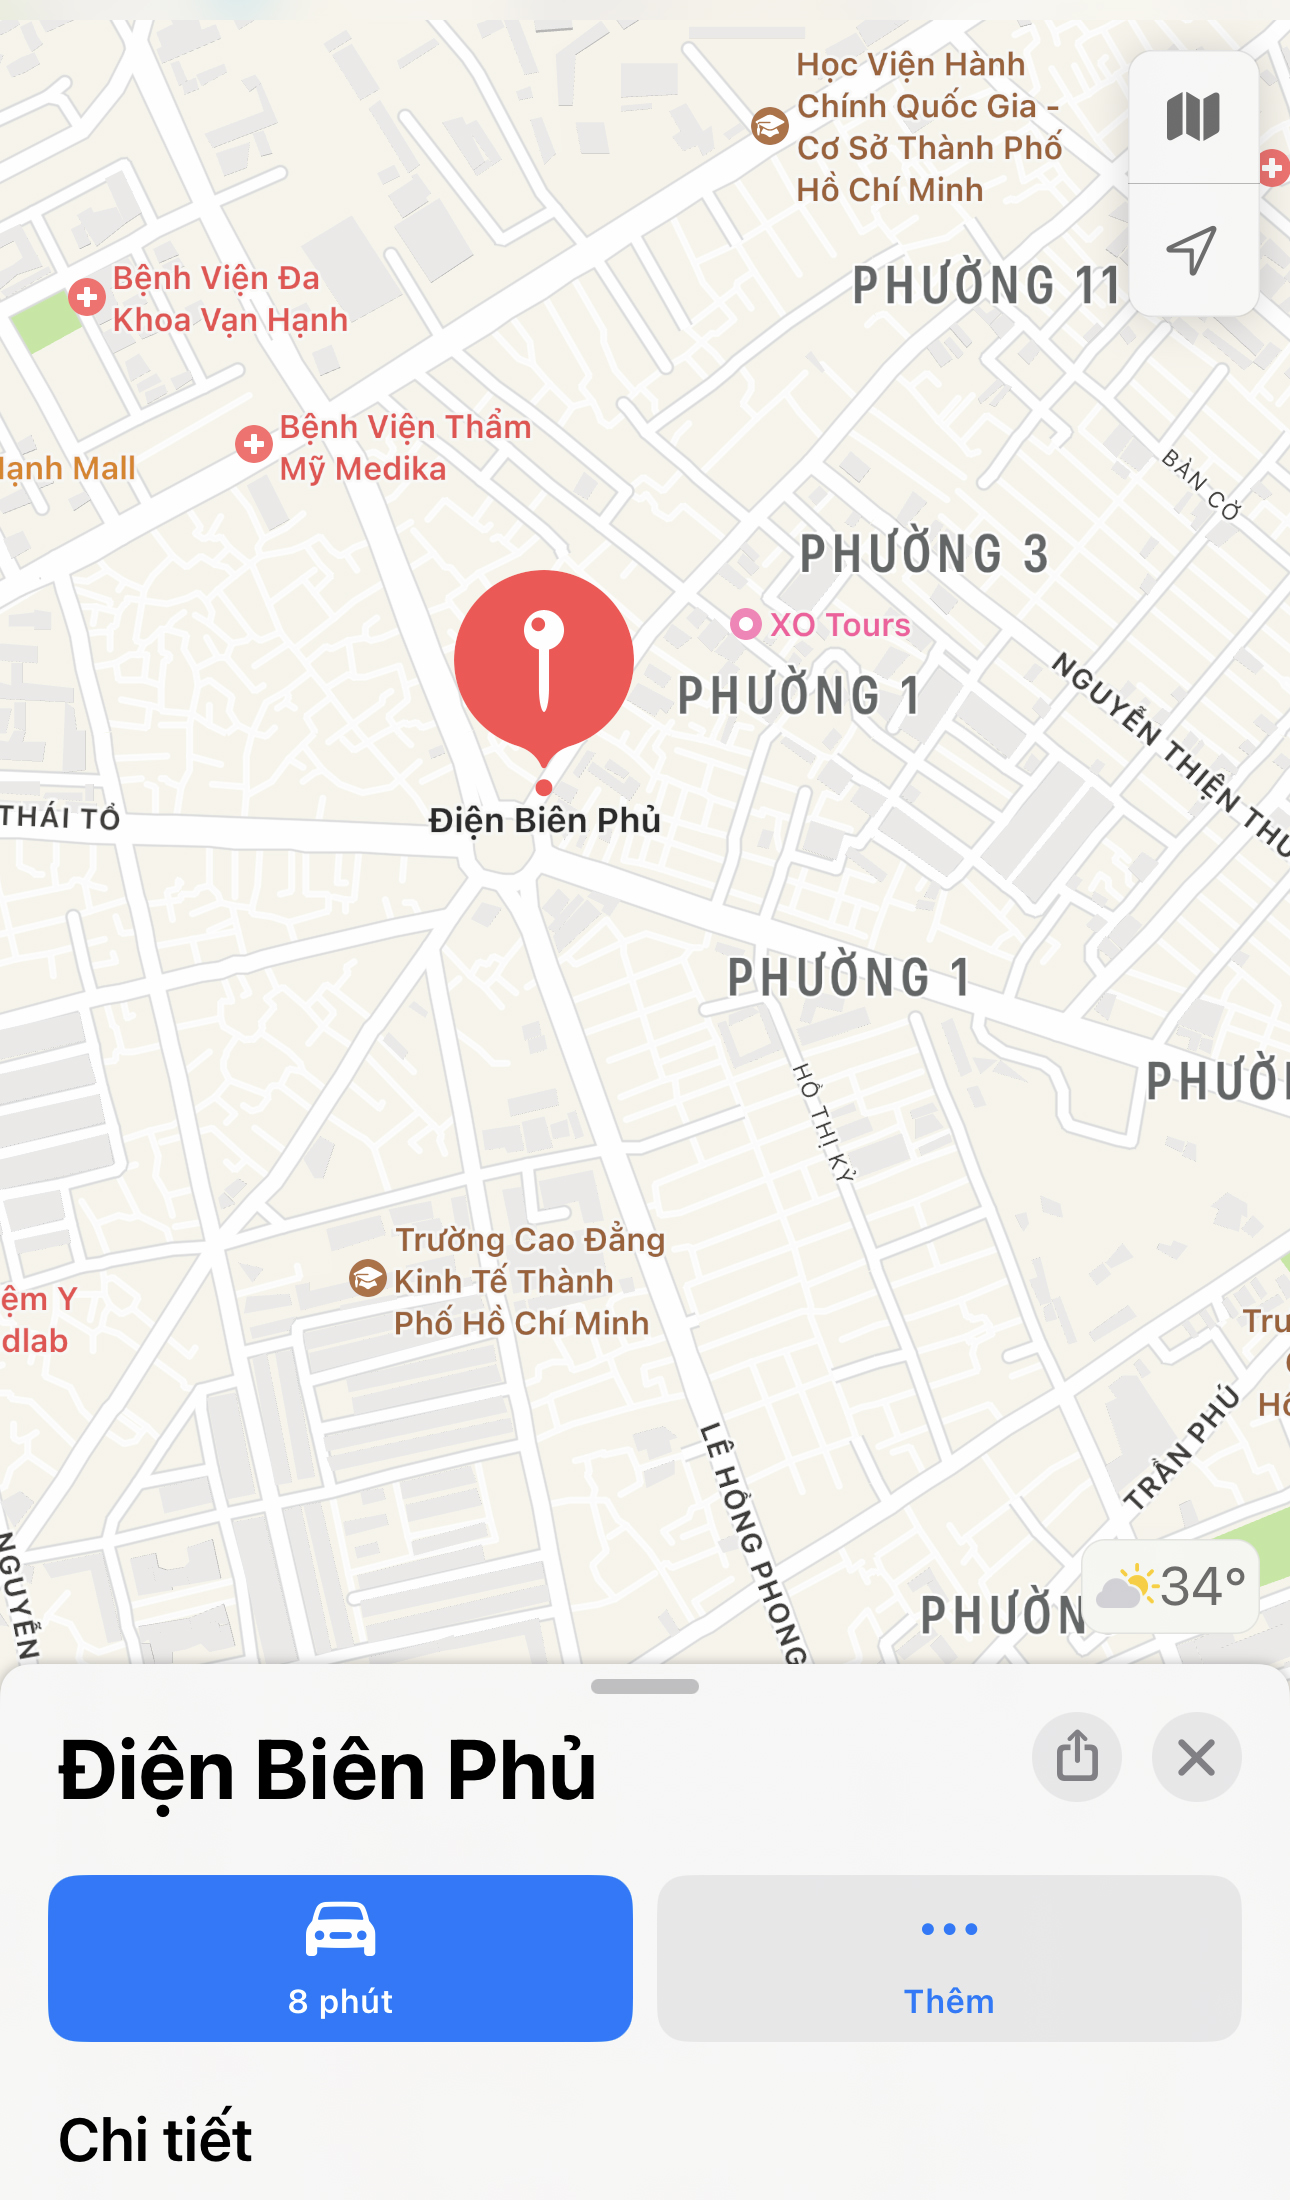 Google Maps Cập Nhật Đổi Tên Đường Ở Tp.Hcm, Đường Điện Biên Phủ Đổi Tên  Thành Võ Nguyên Giáp?